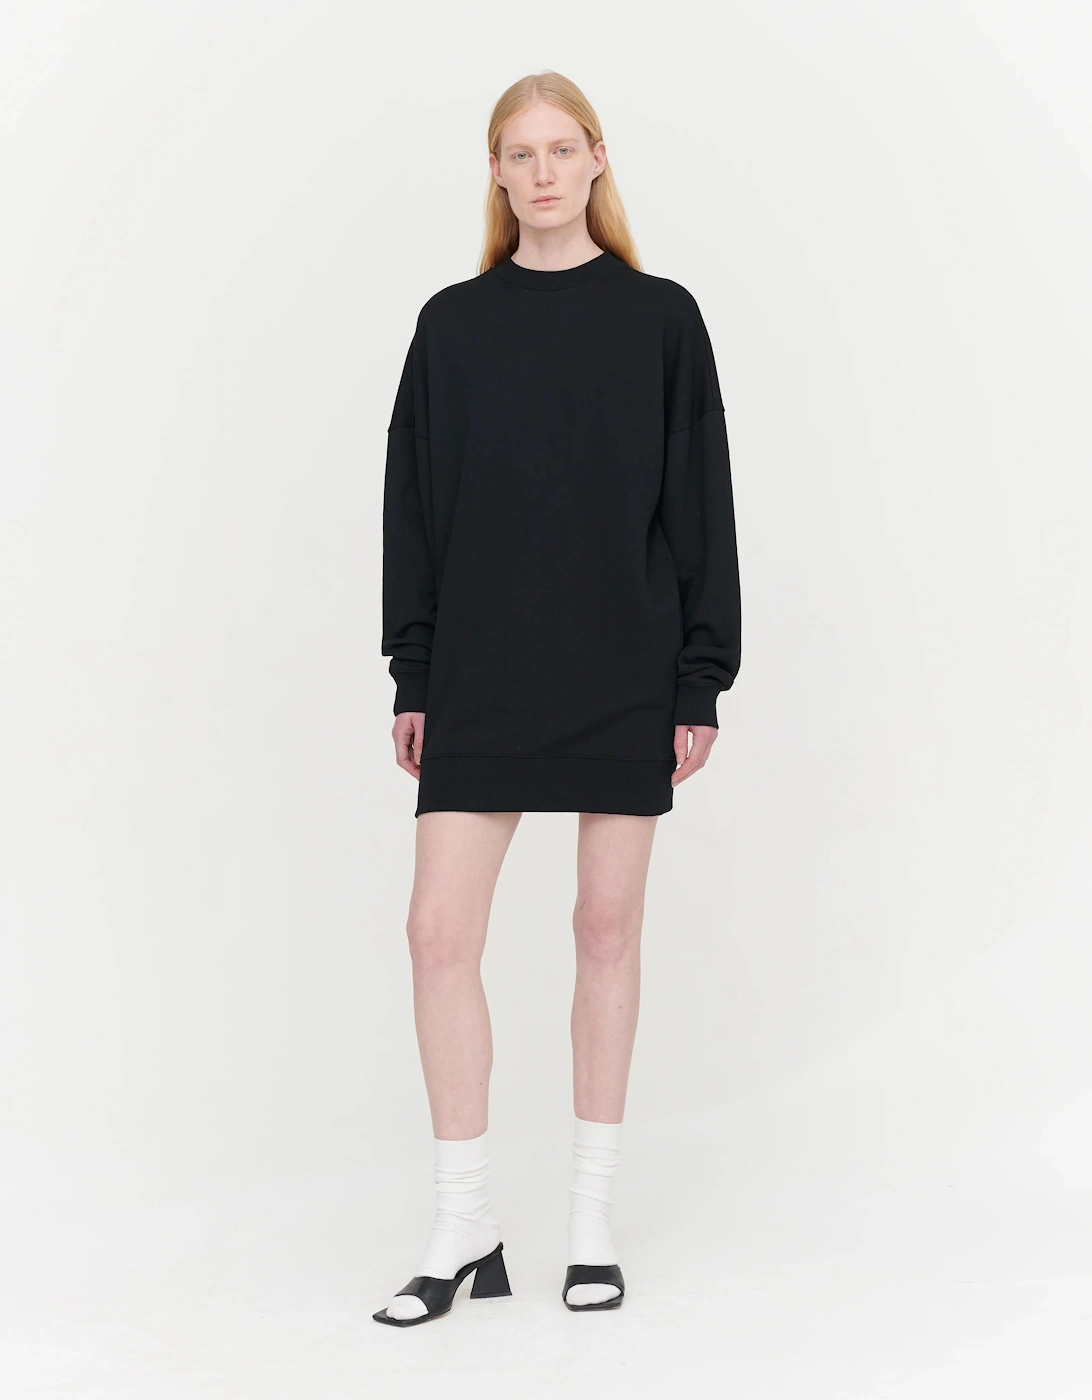 Brielle Sweatshirt Dress in Black, 7 of 6